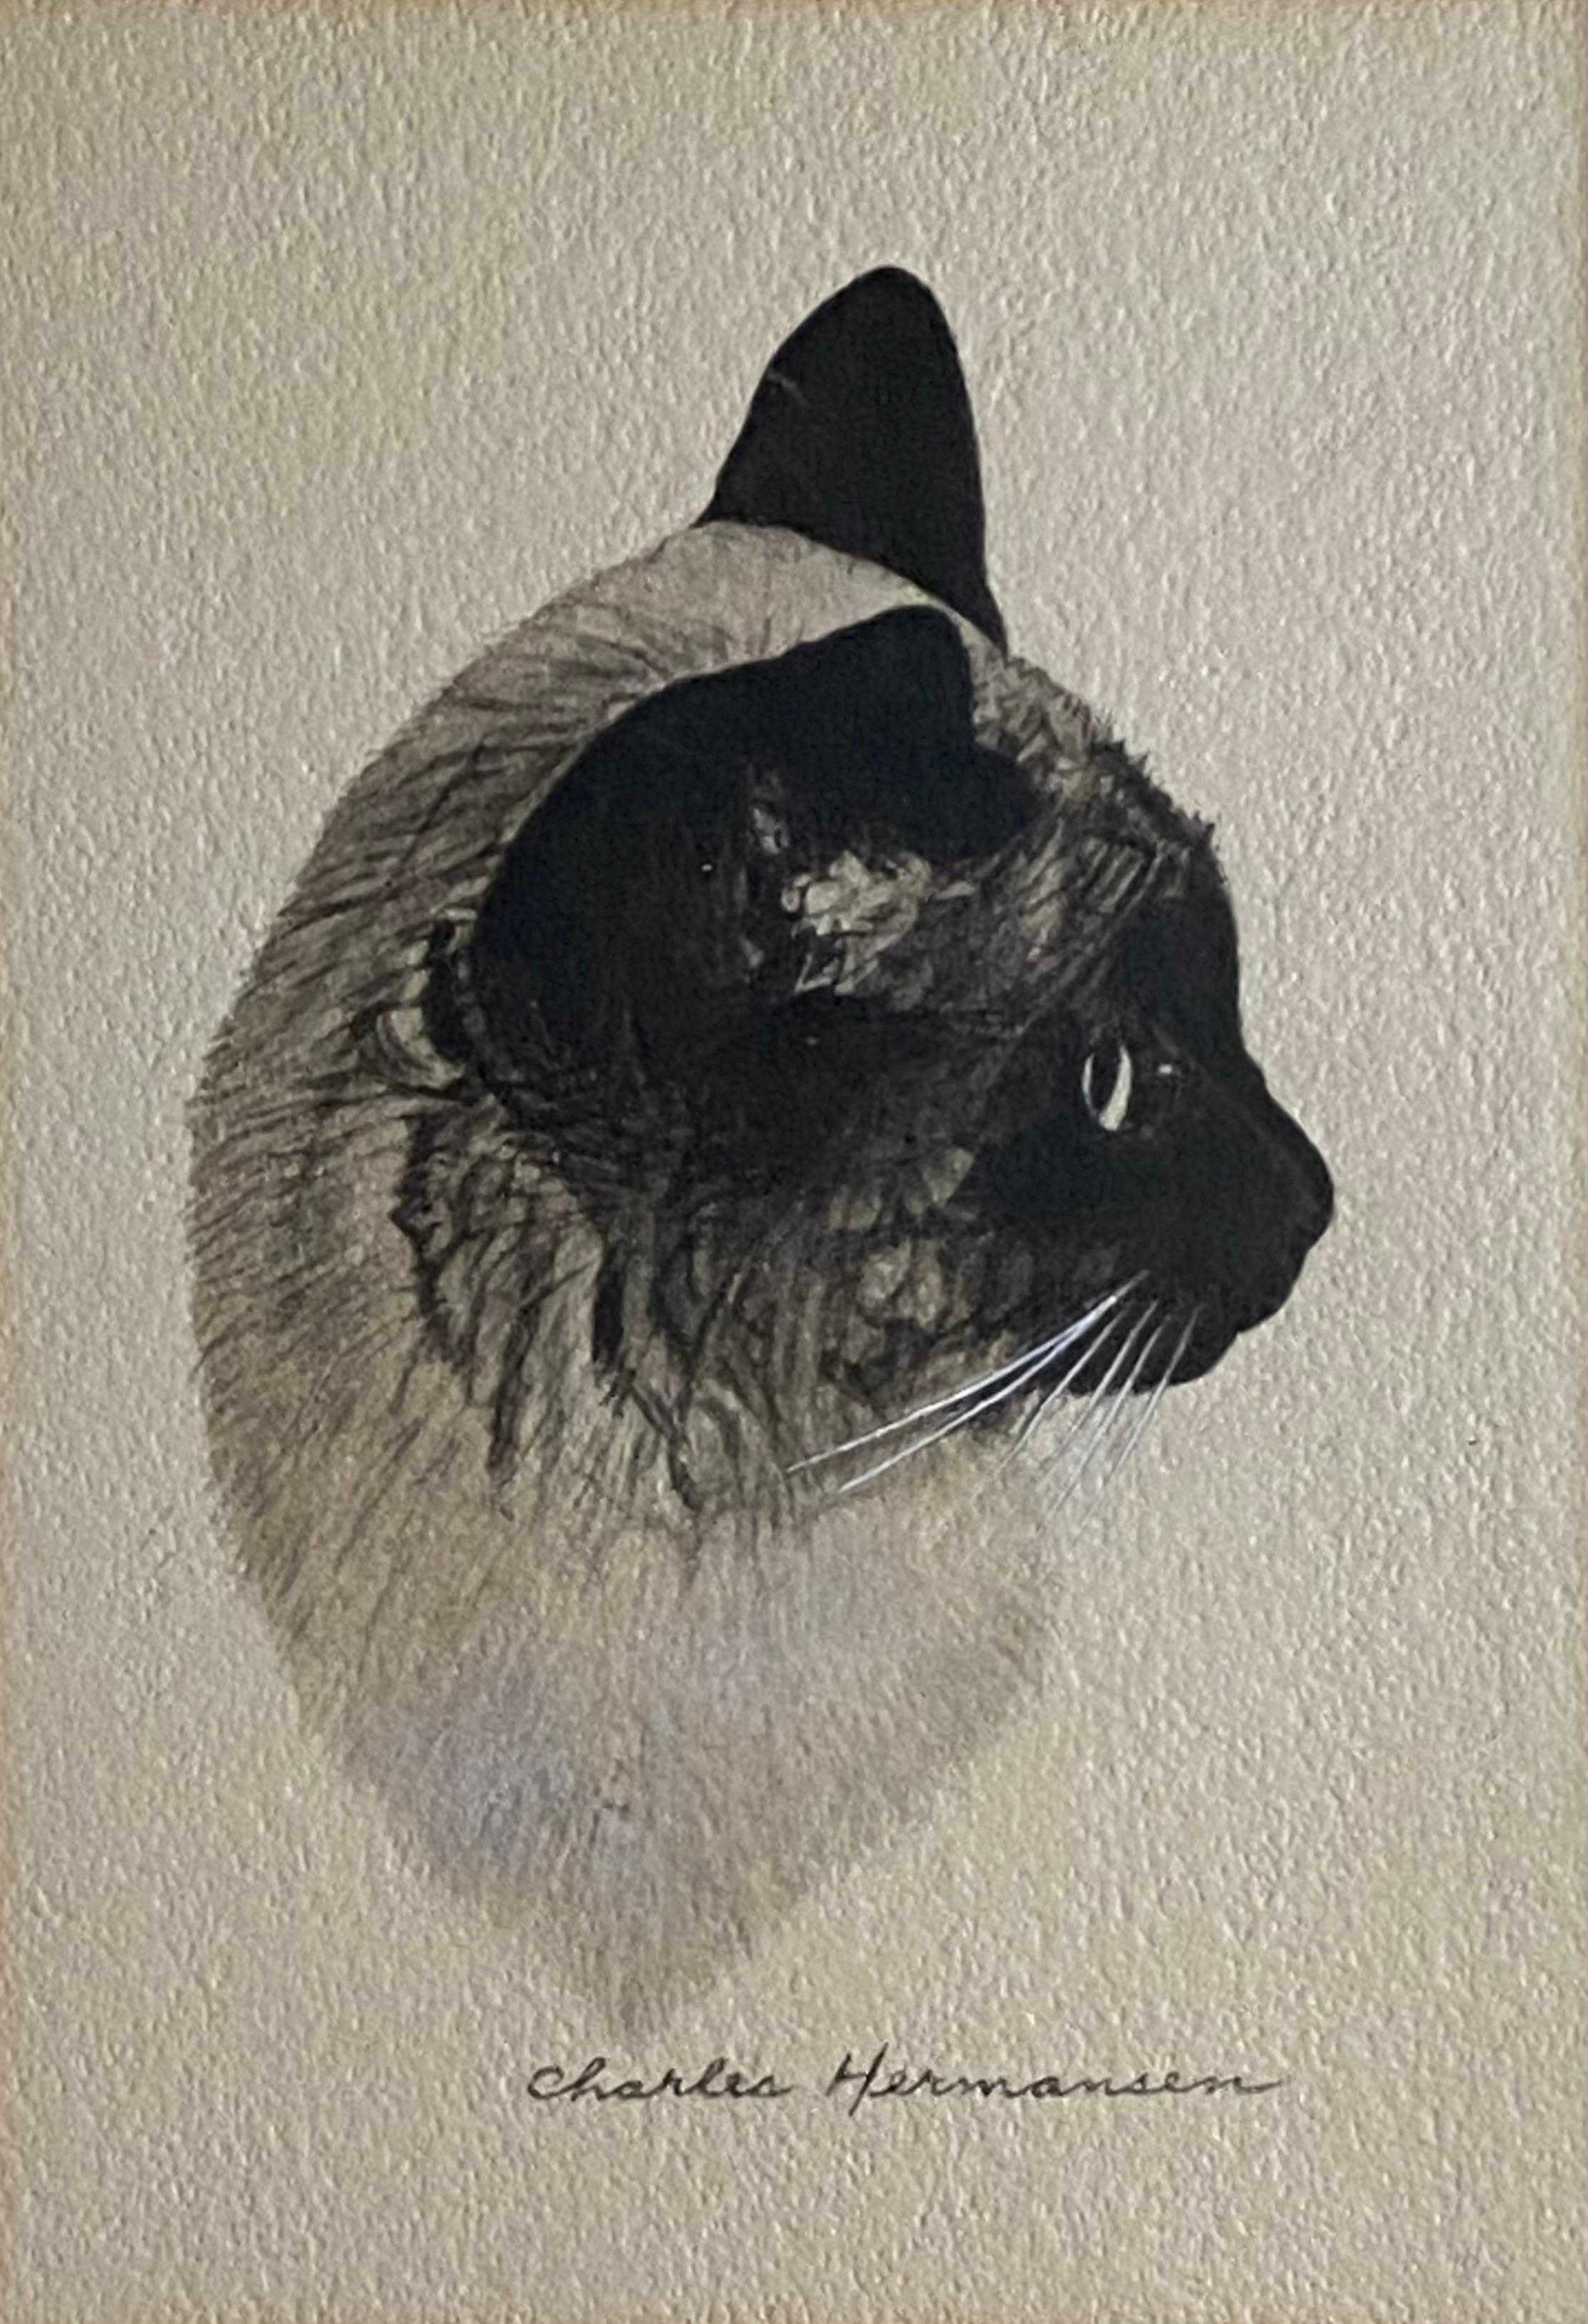 Katze im Profil (Realismus), Art, von Charles Hermansen